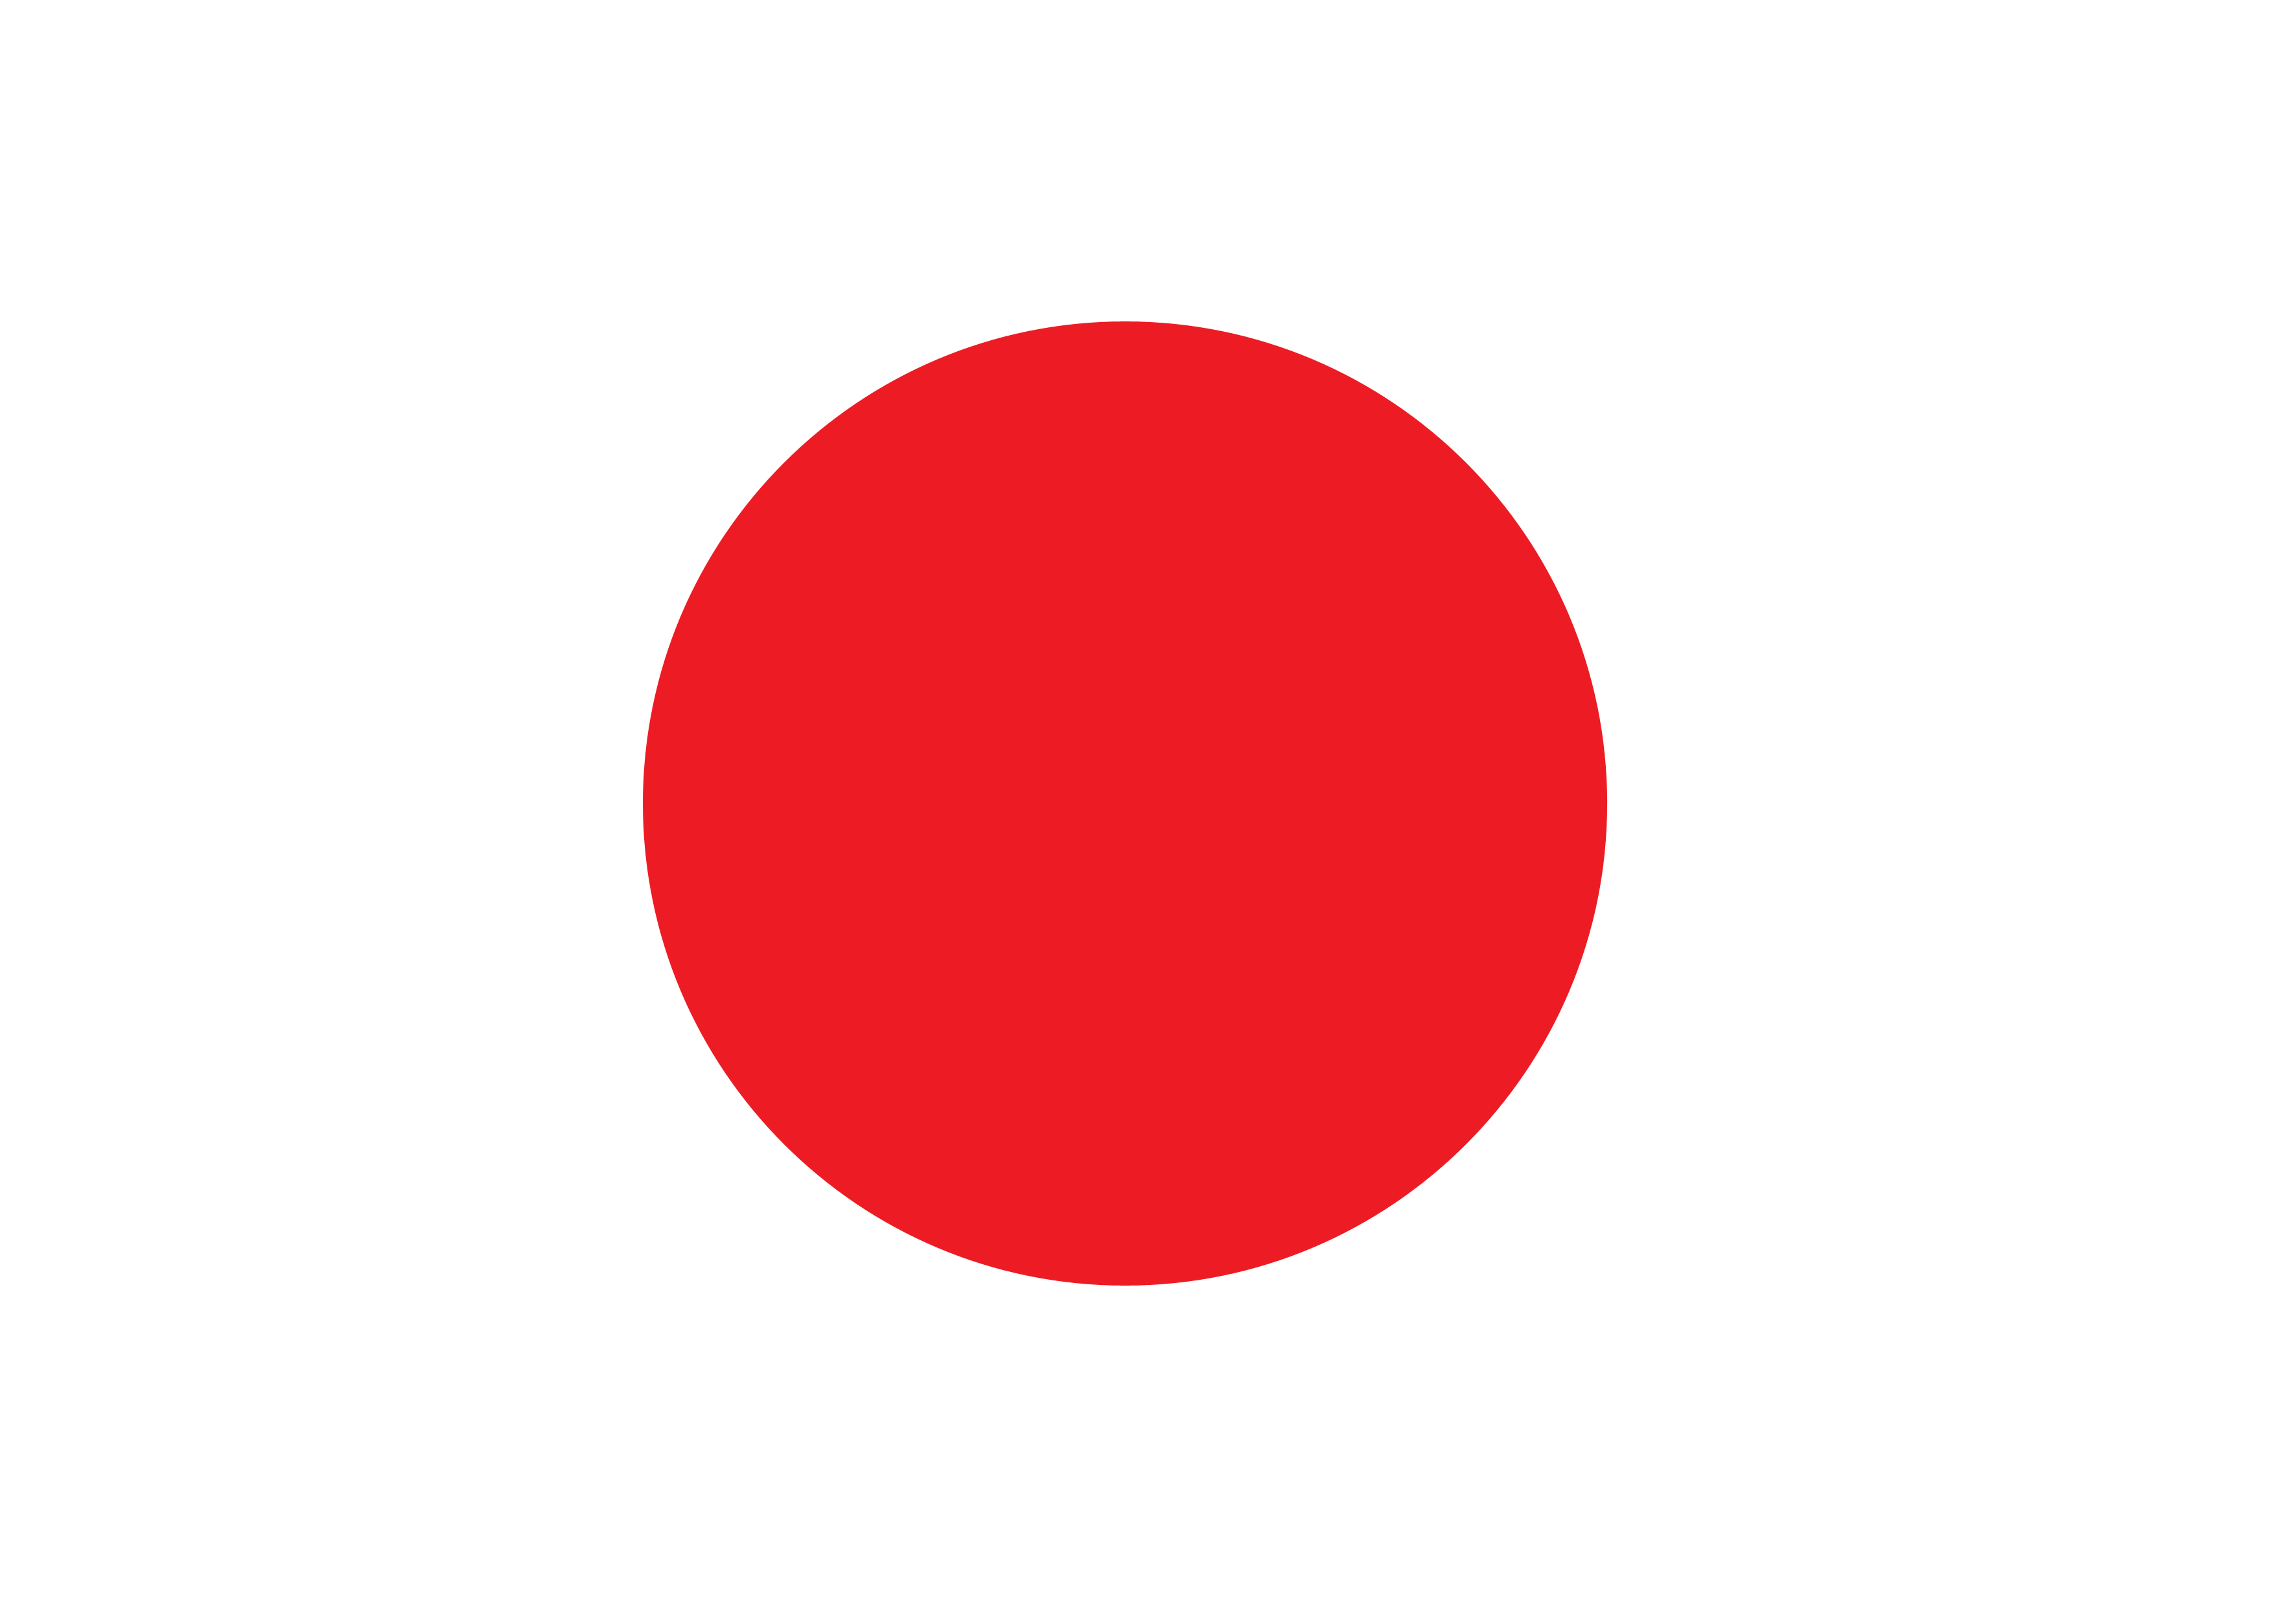 File:Japan flag - variant.png